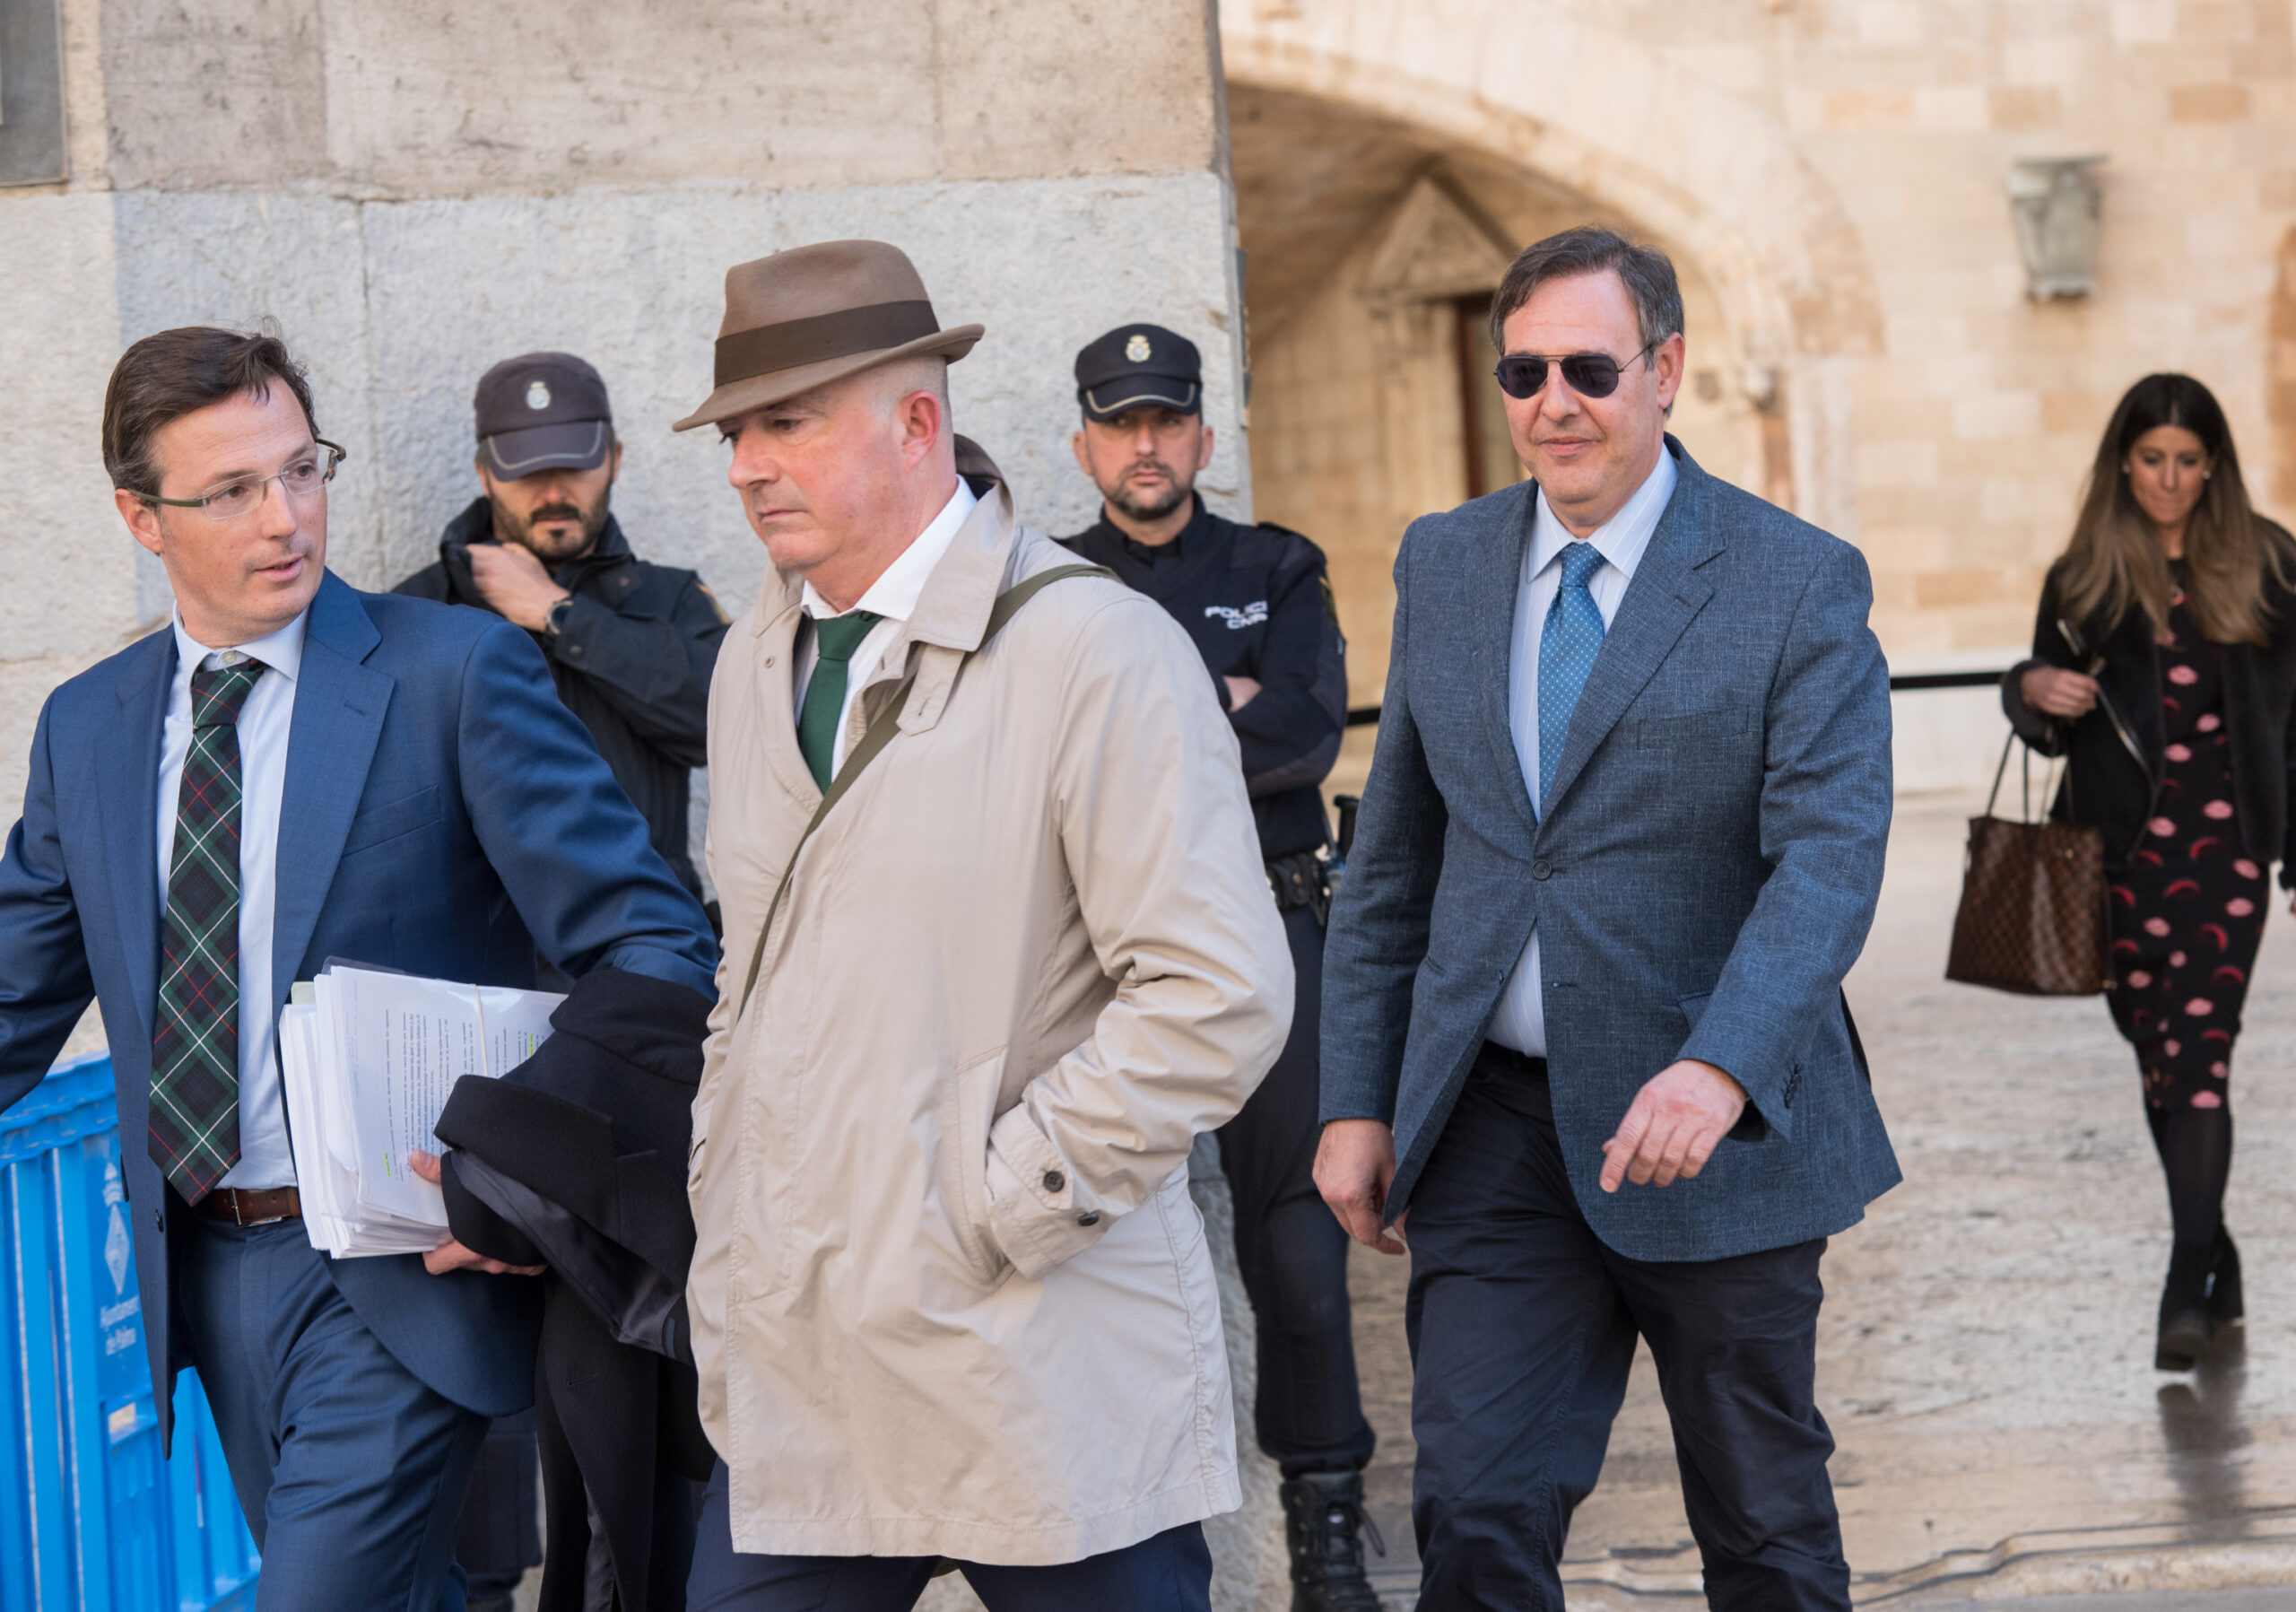 Der Richter und der Staatsanwalt, die den „König der Nacht“ von Mallorca eingesperrt haben, werden zu 9 Jahren Gefängnis verurteilt